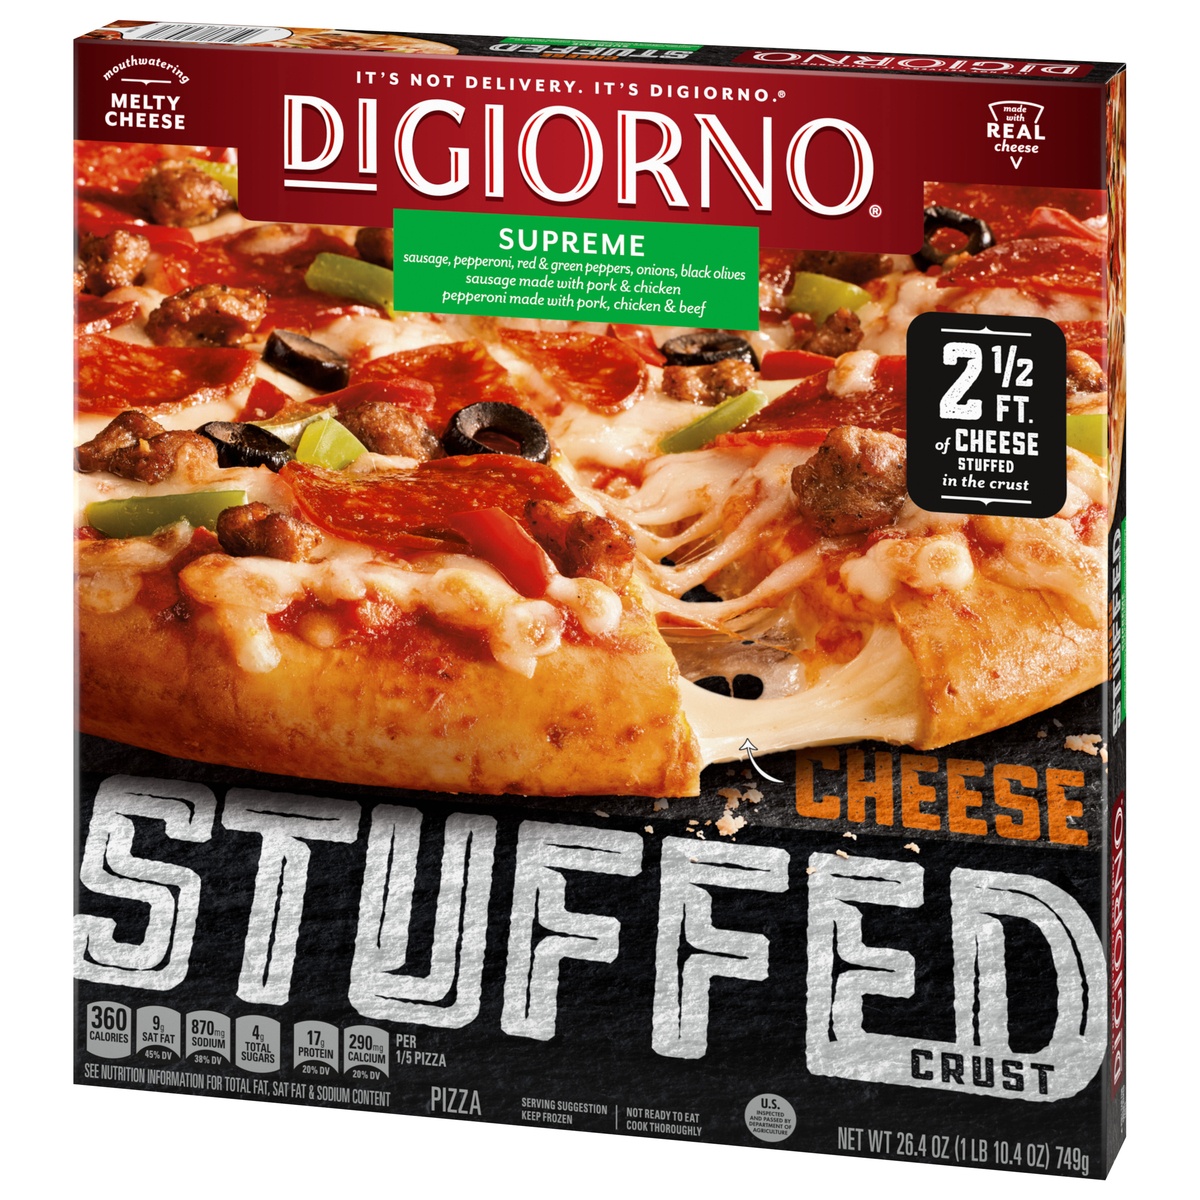 slide 5 of 11, DIGIORNO Supreme Frozen Pizza on a Cheese Stuffed Crust, 26.4 oz